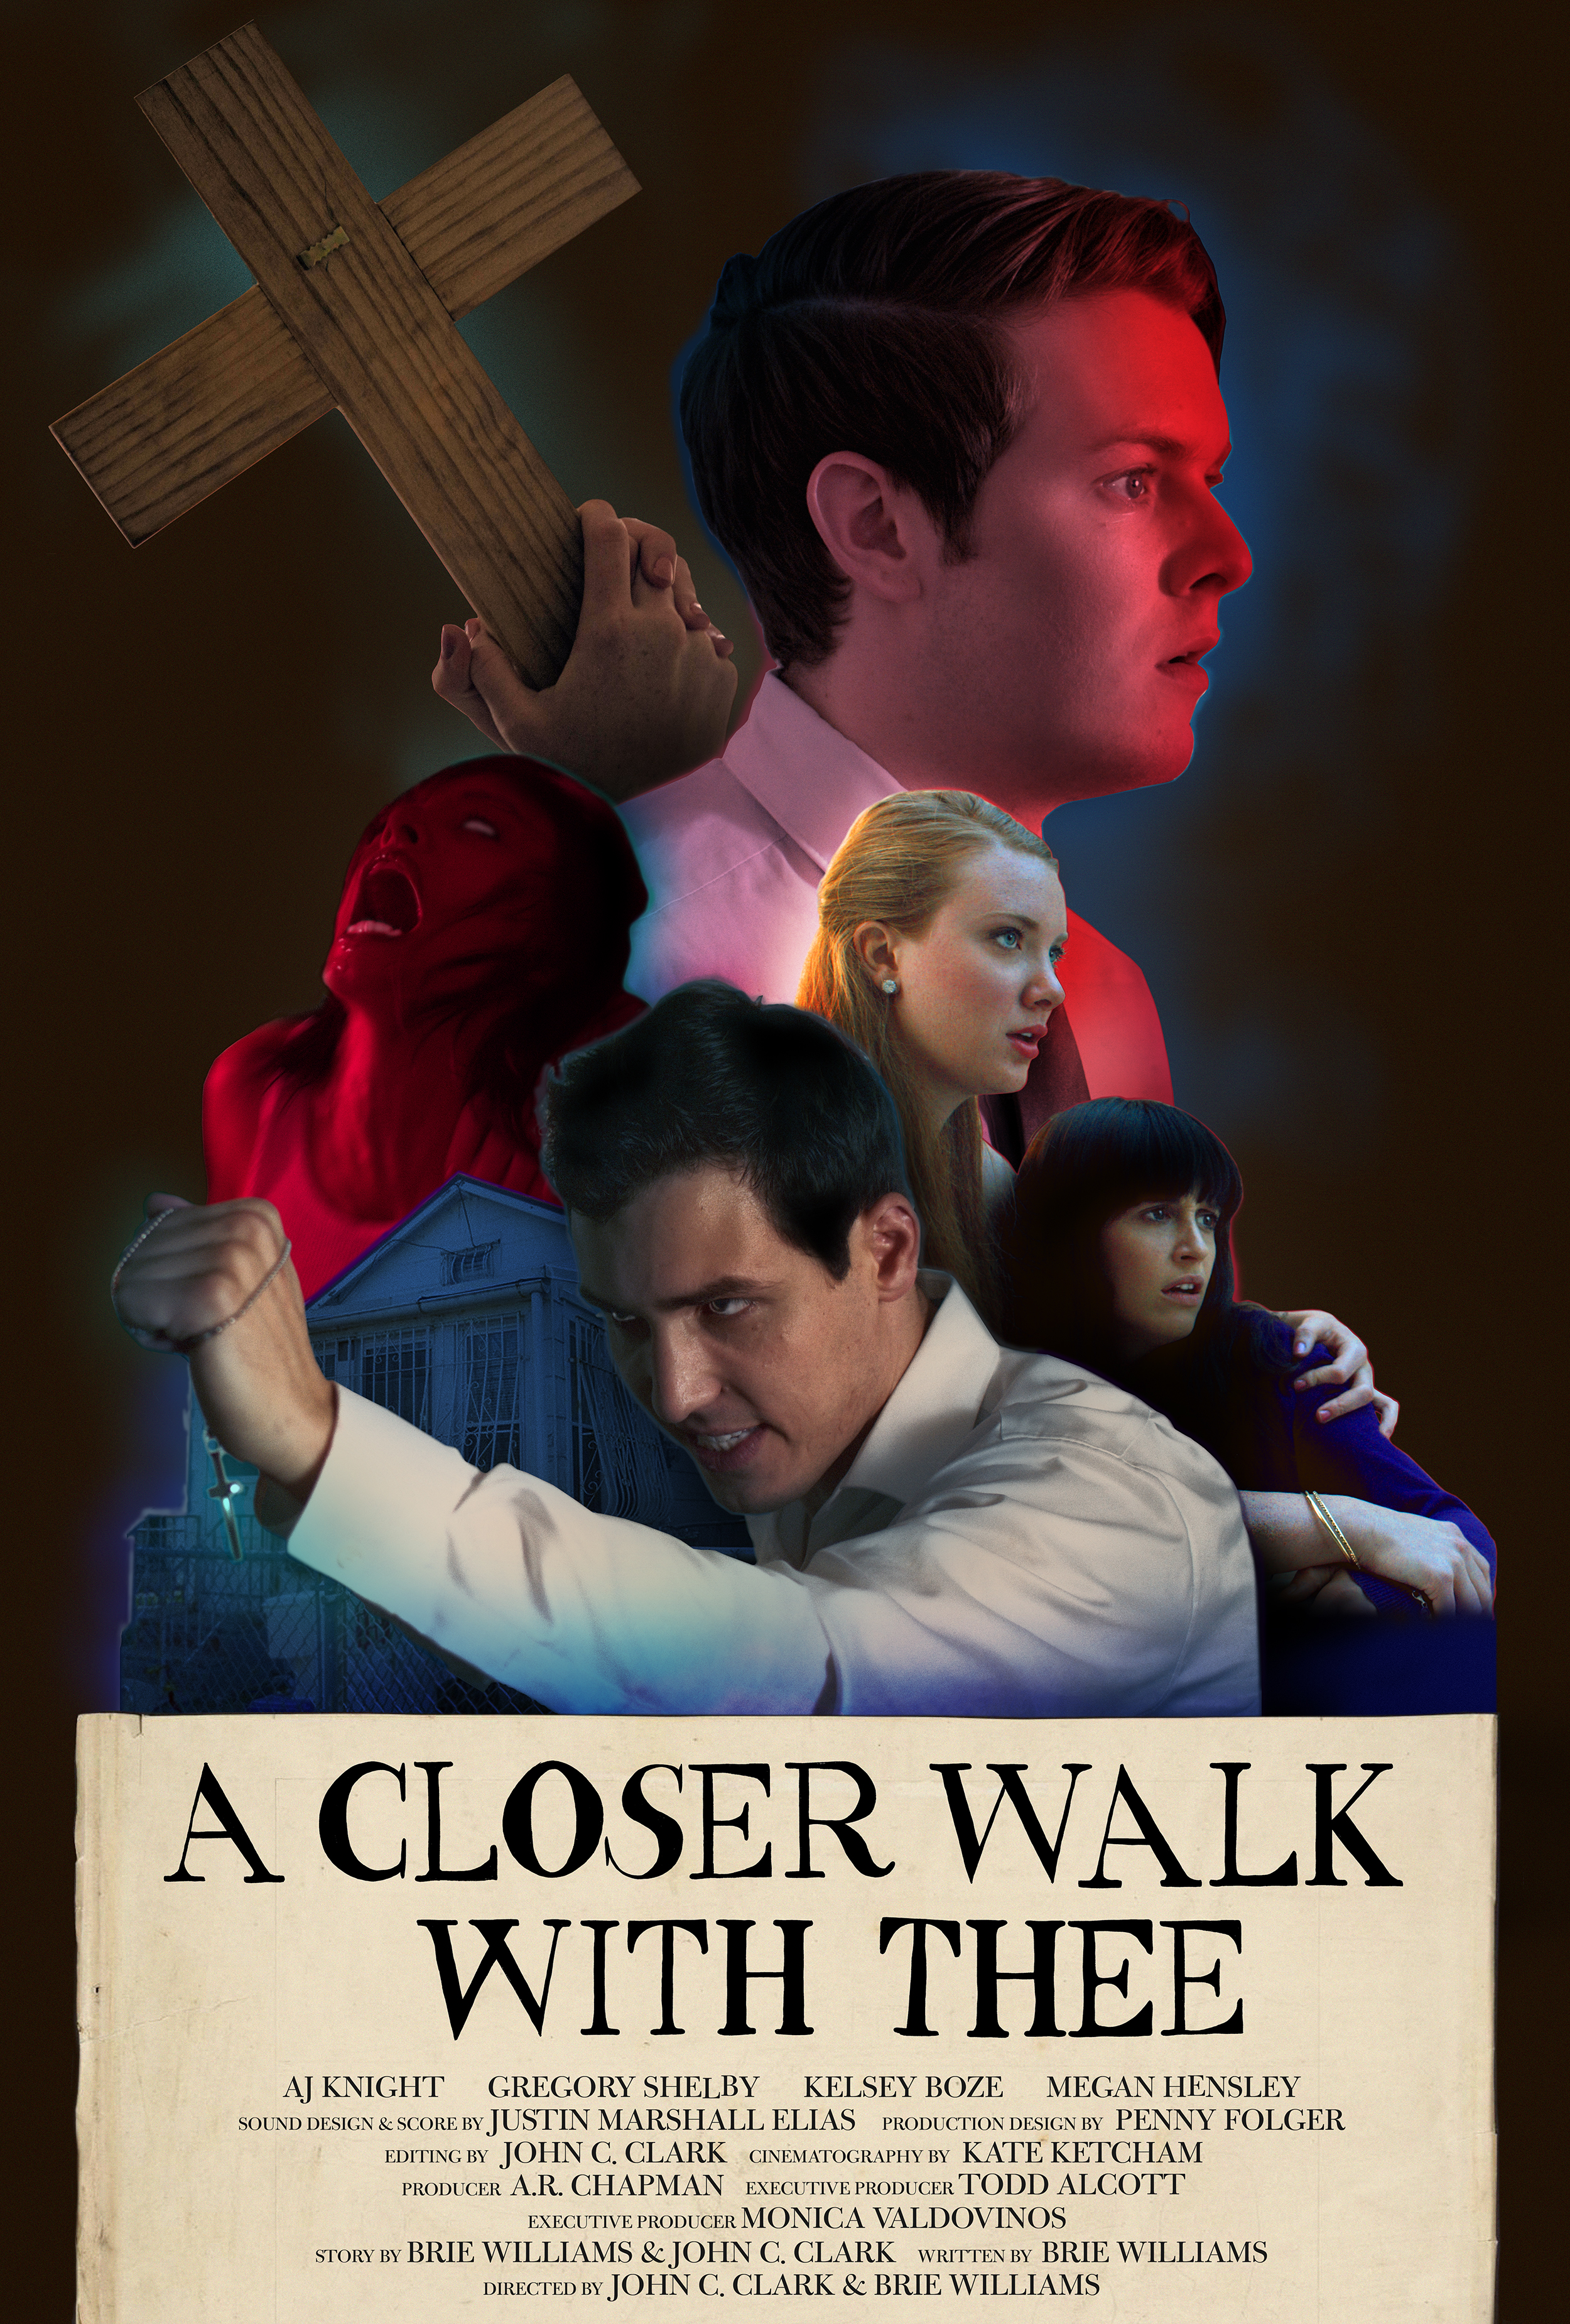 Nonton film A Closer Walk With Thee layarkaca21 indoxx1 ganool online streaming terbaru